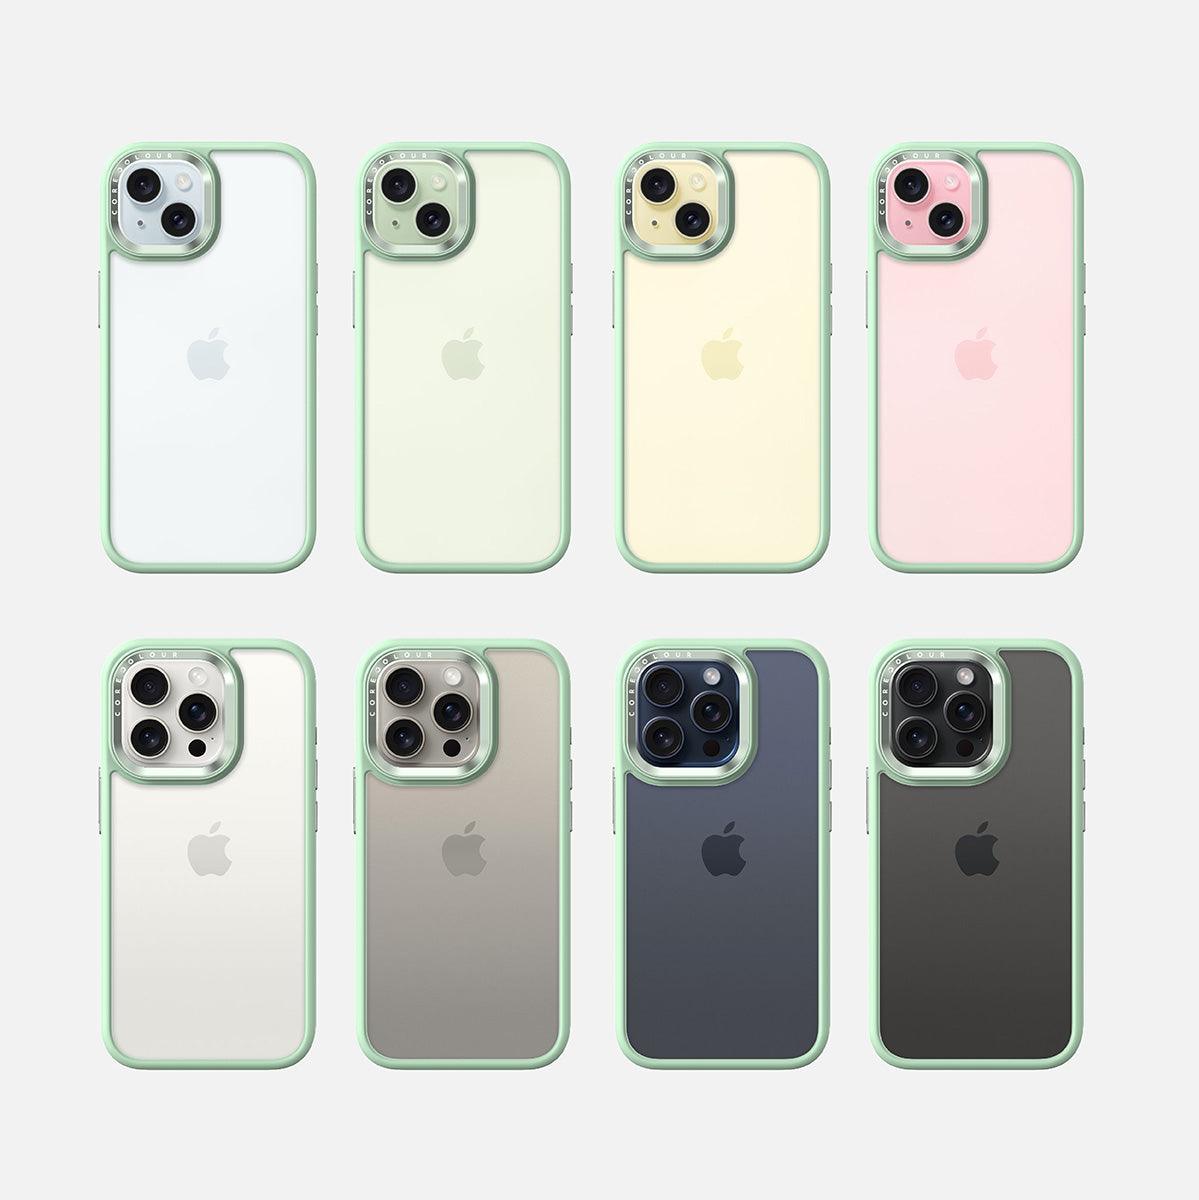 iPhone 11 Pro Hint of Mint Clear Phone Case - CORECOLOUR AU